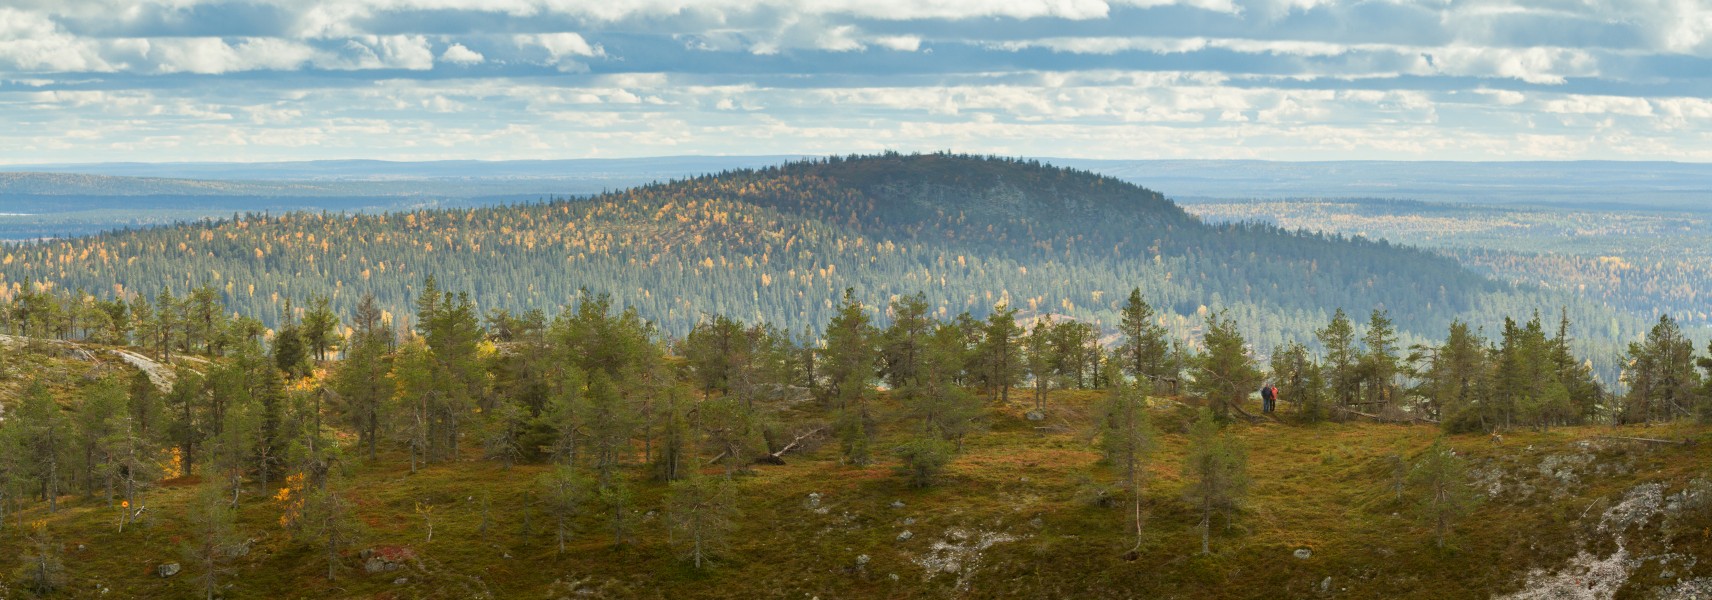 Pyhävaara and Juhannuskallio as seen from Rukatunturi, 2018 September